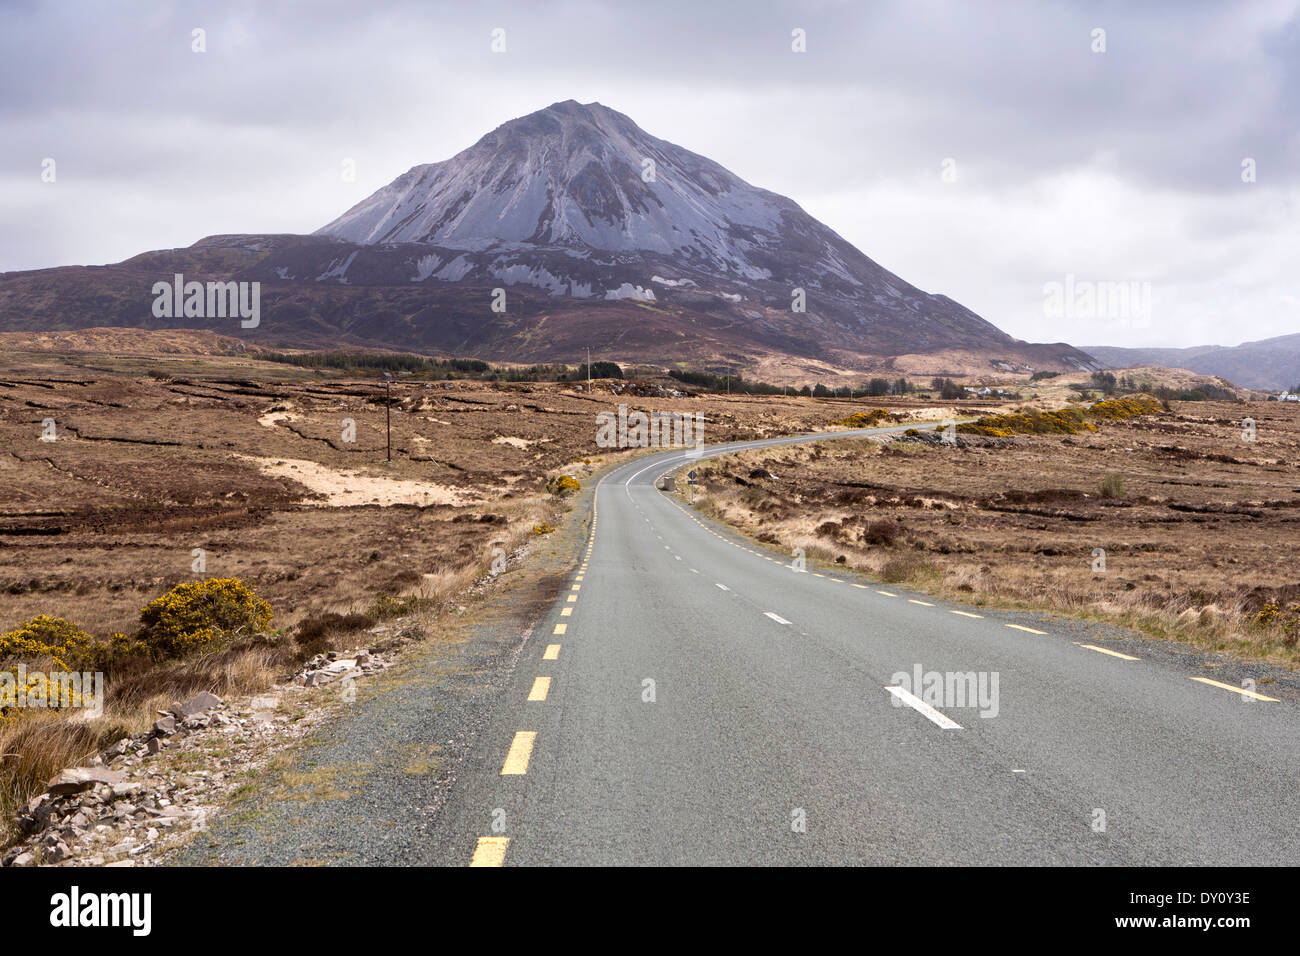 L'Irlande, Co Donegal, Dunlewey, Mount Errigal, la deuxième plus haute montagne d'Irlande Banque D'Images